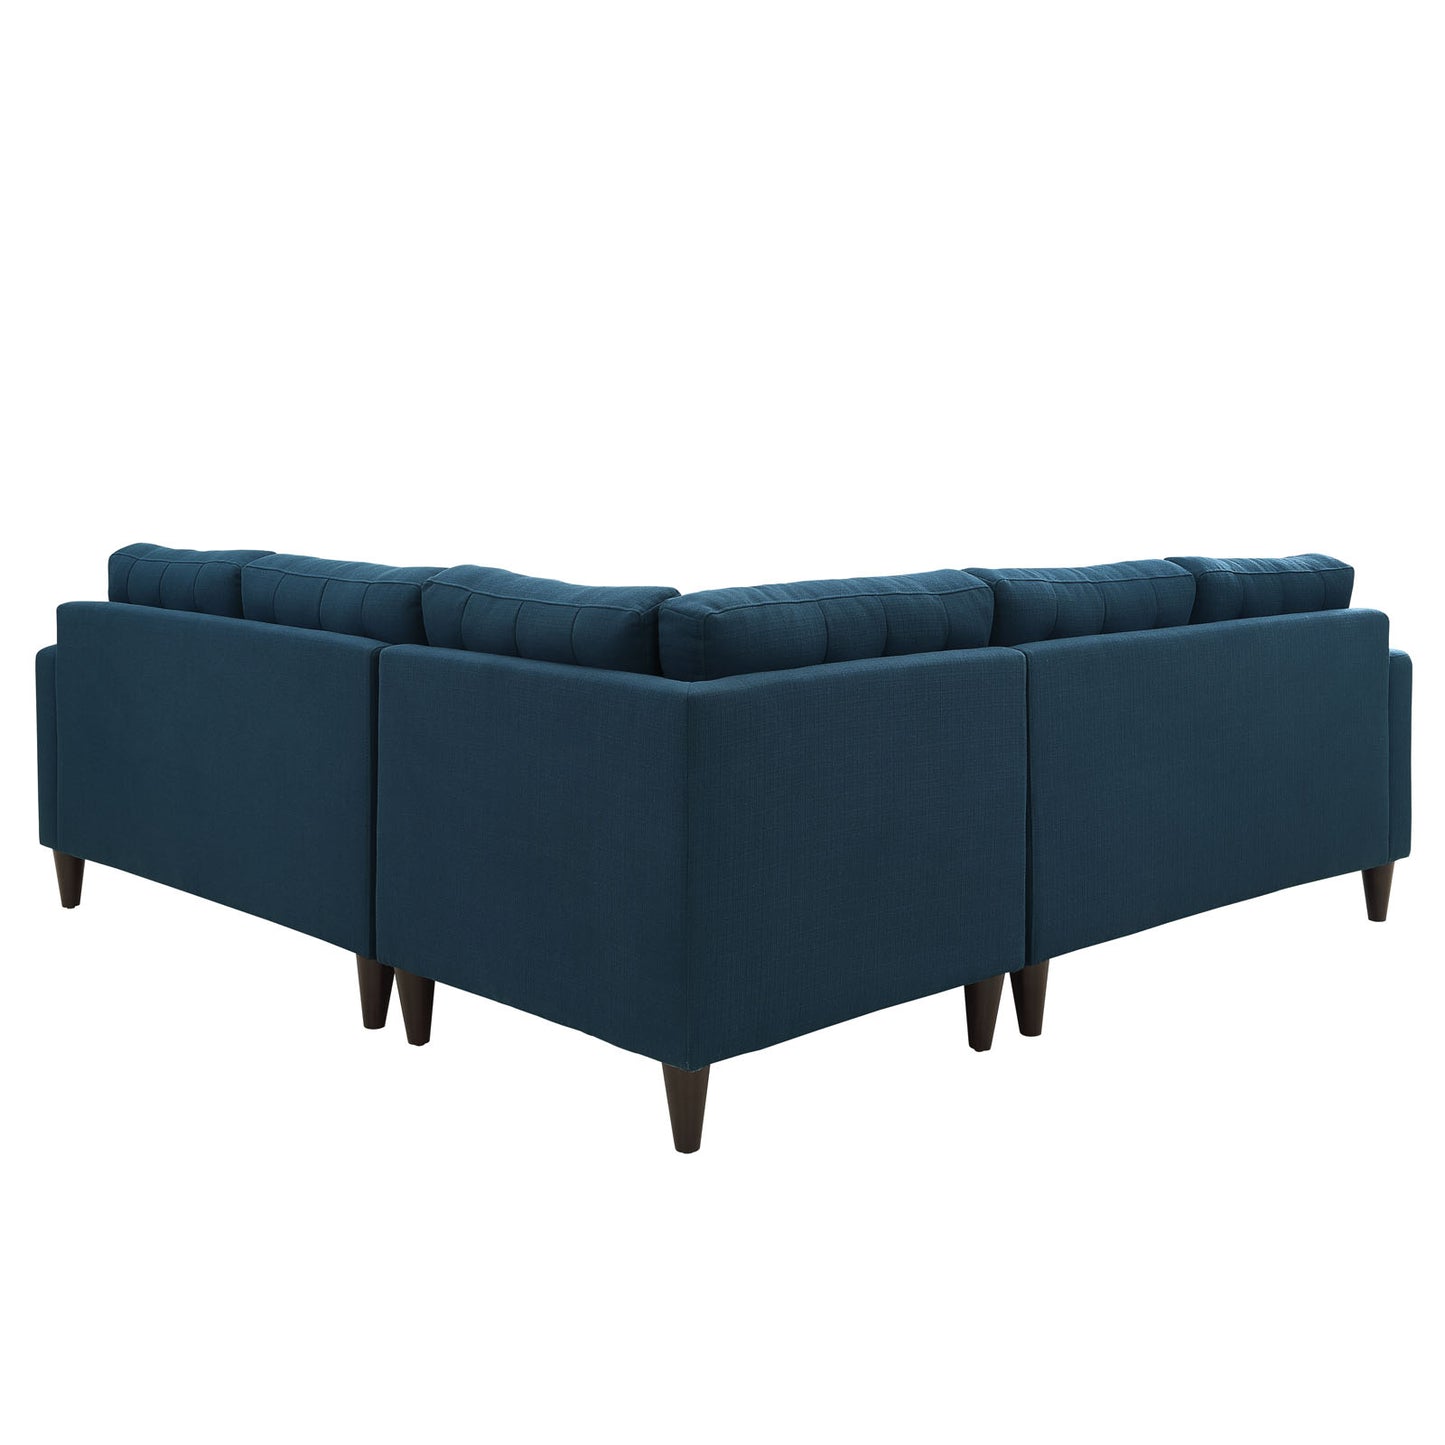 Empress 3 Piece Upholstered Fabric Sectional Sofa Set Azure EEI-1417-AZU